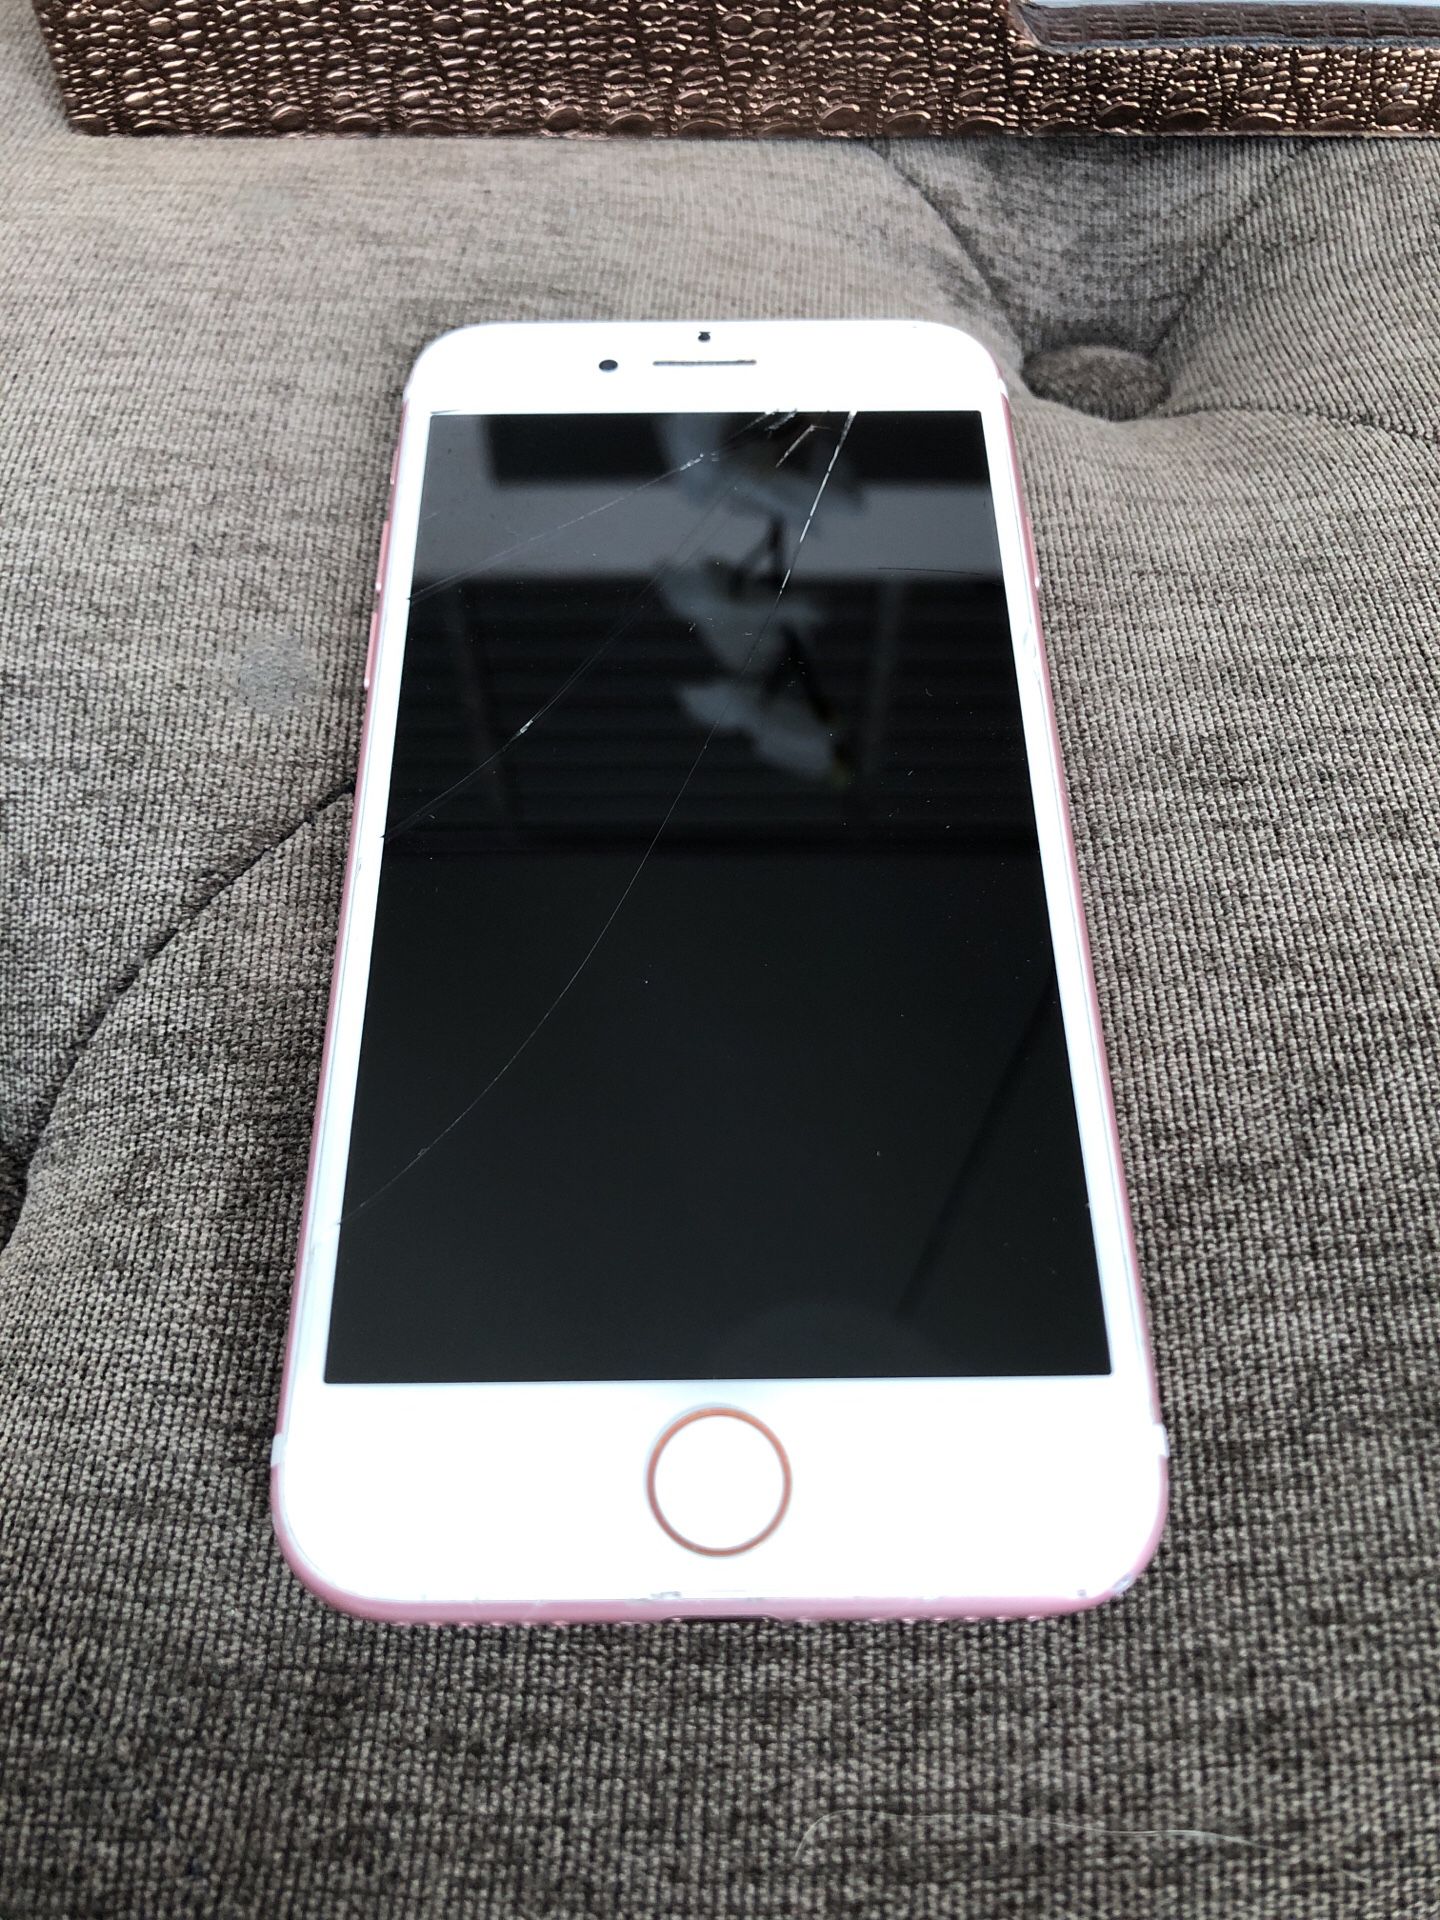 iPhone 7 32gb rose gold